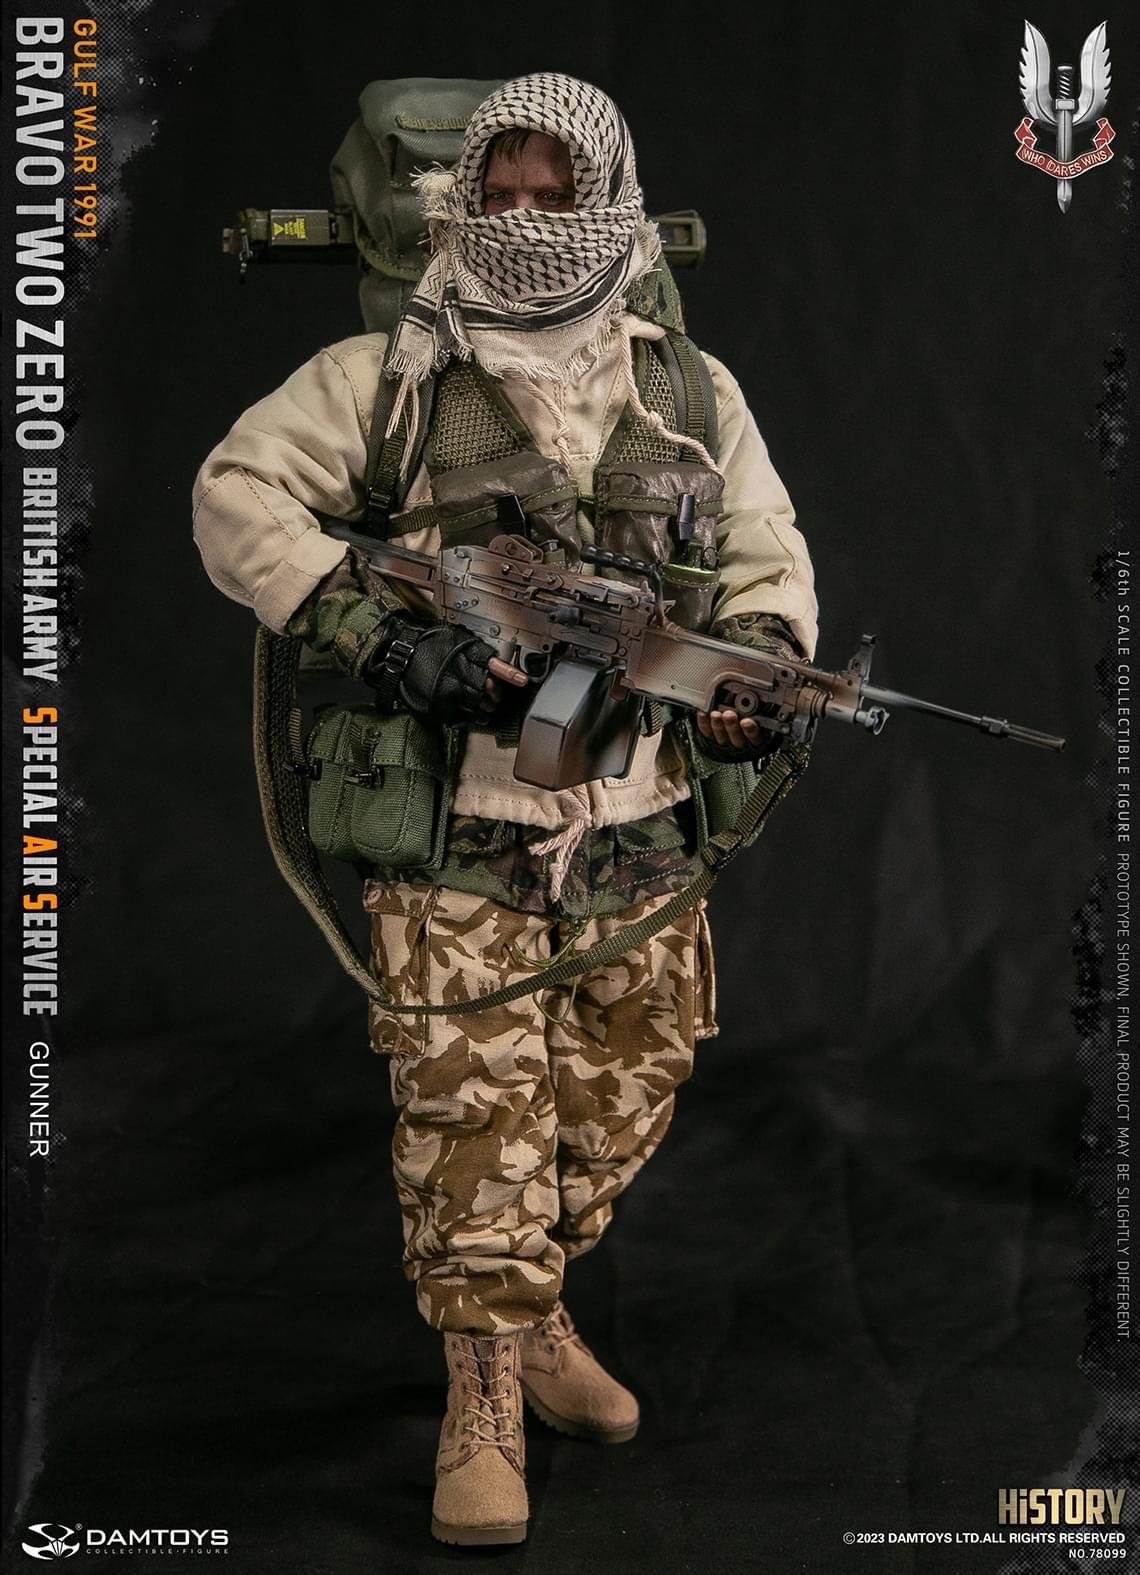 Preventa Figura Bravo Two Zero - British Army SAS Gunner marca Damtoys 78099 escala 1/6